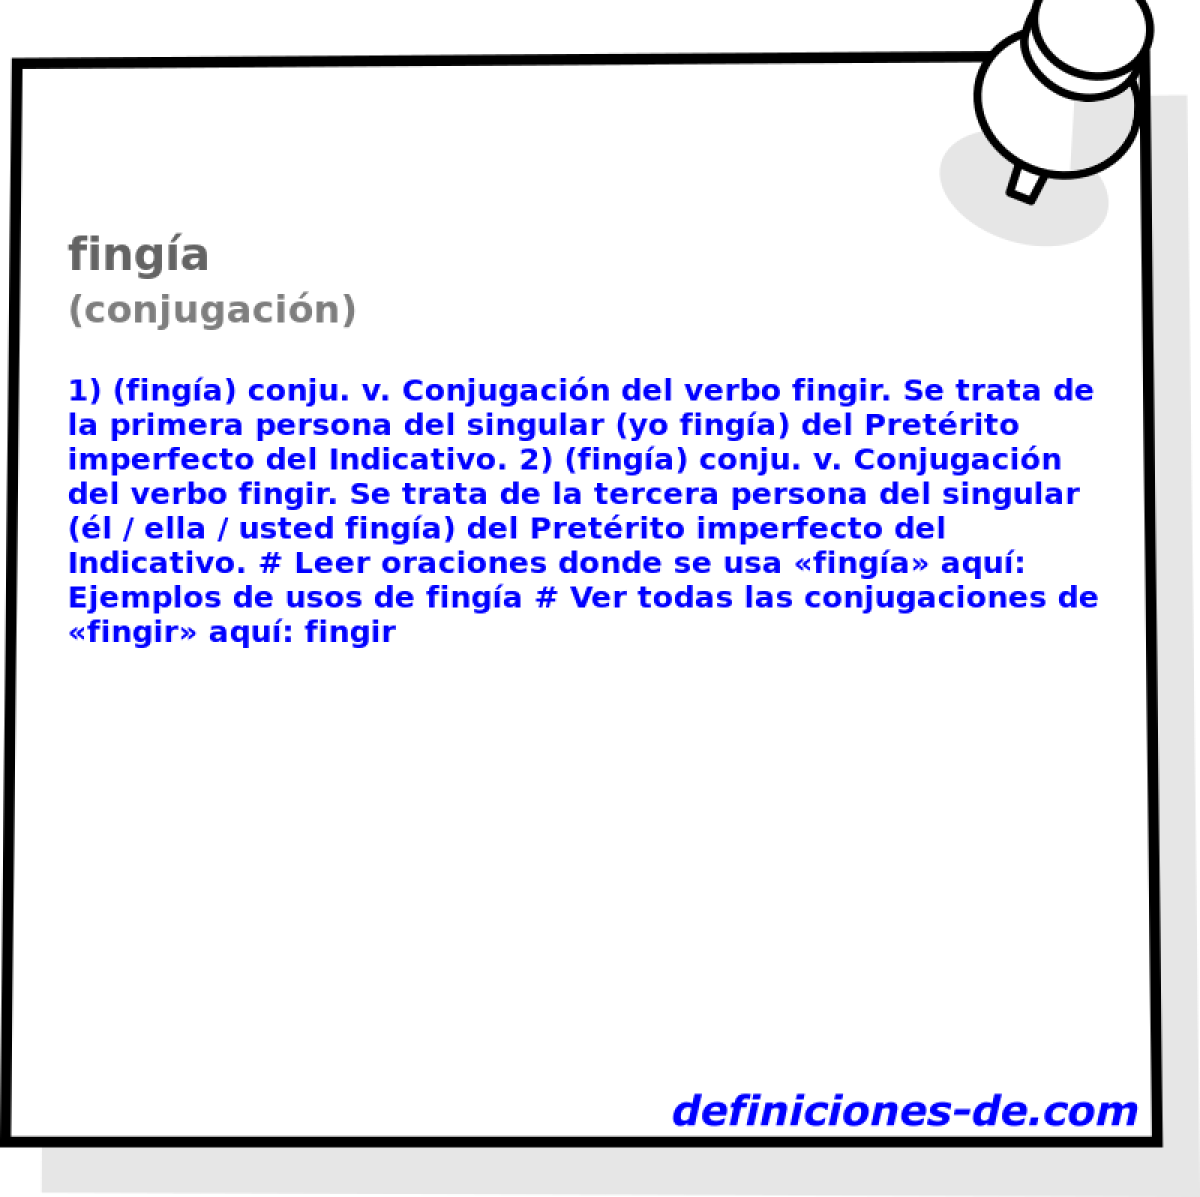 finga (conjugacin)